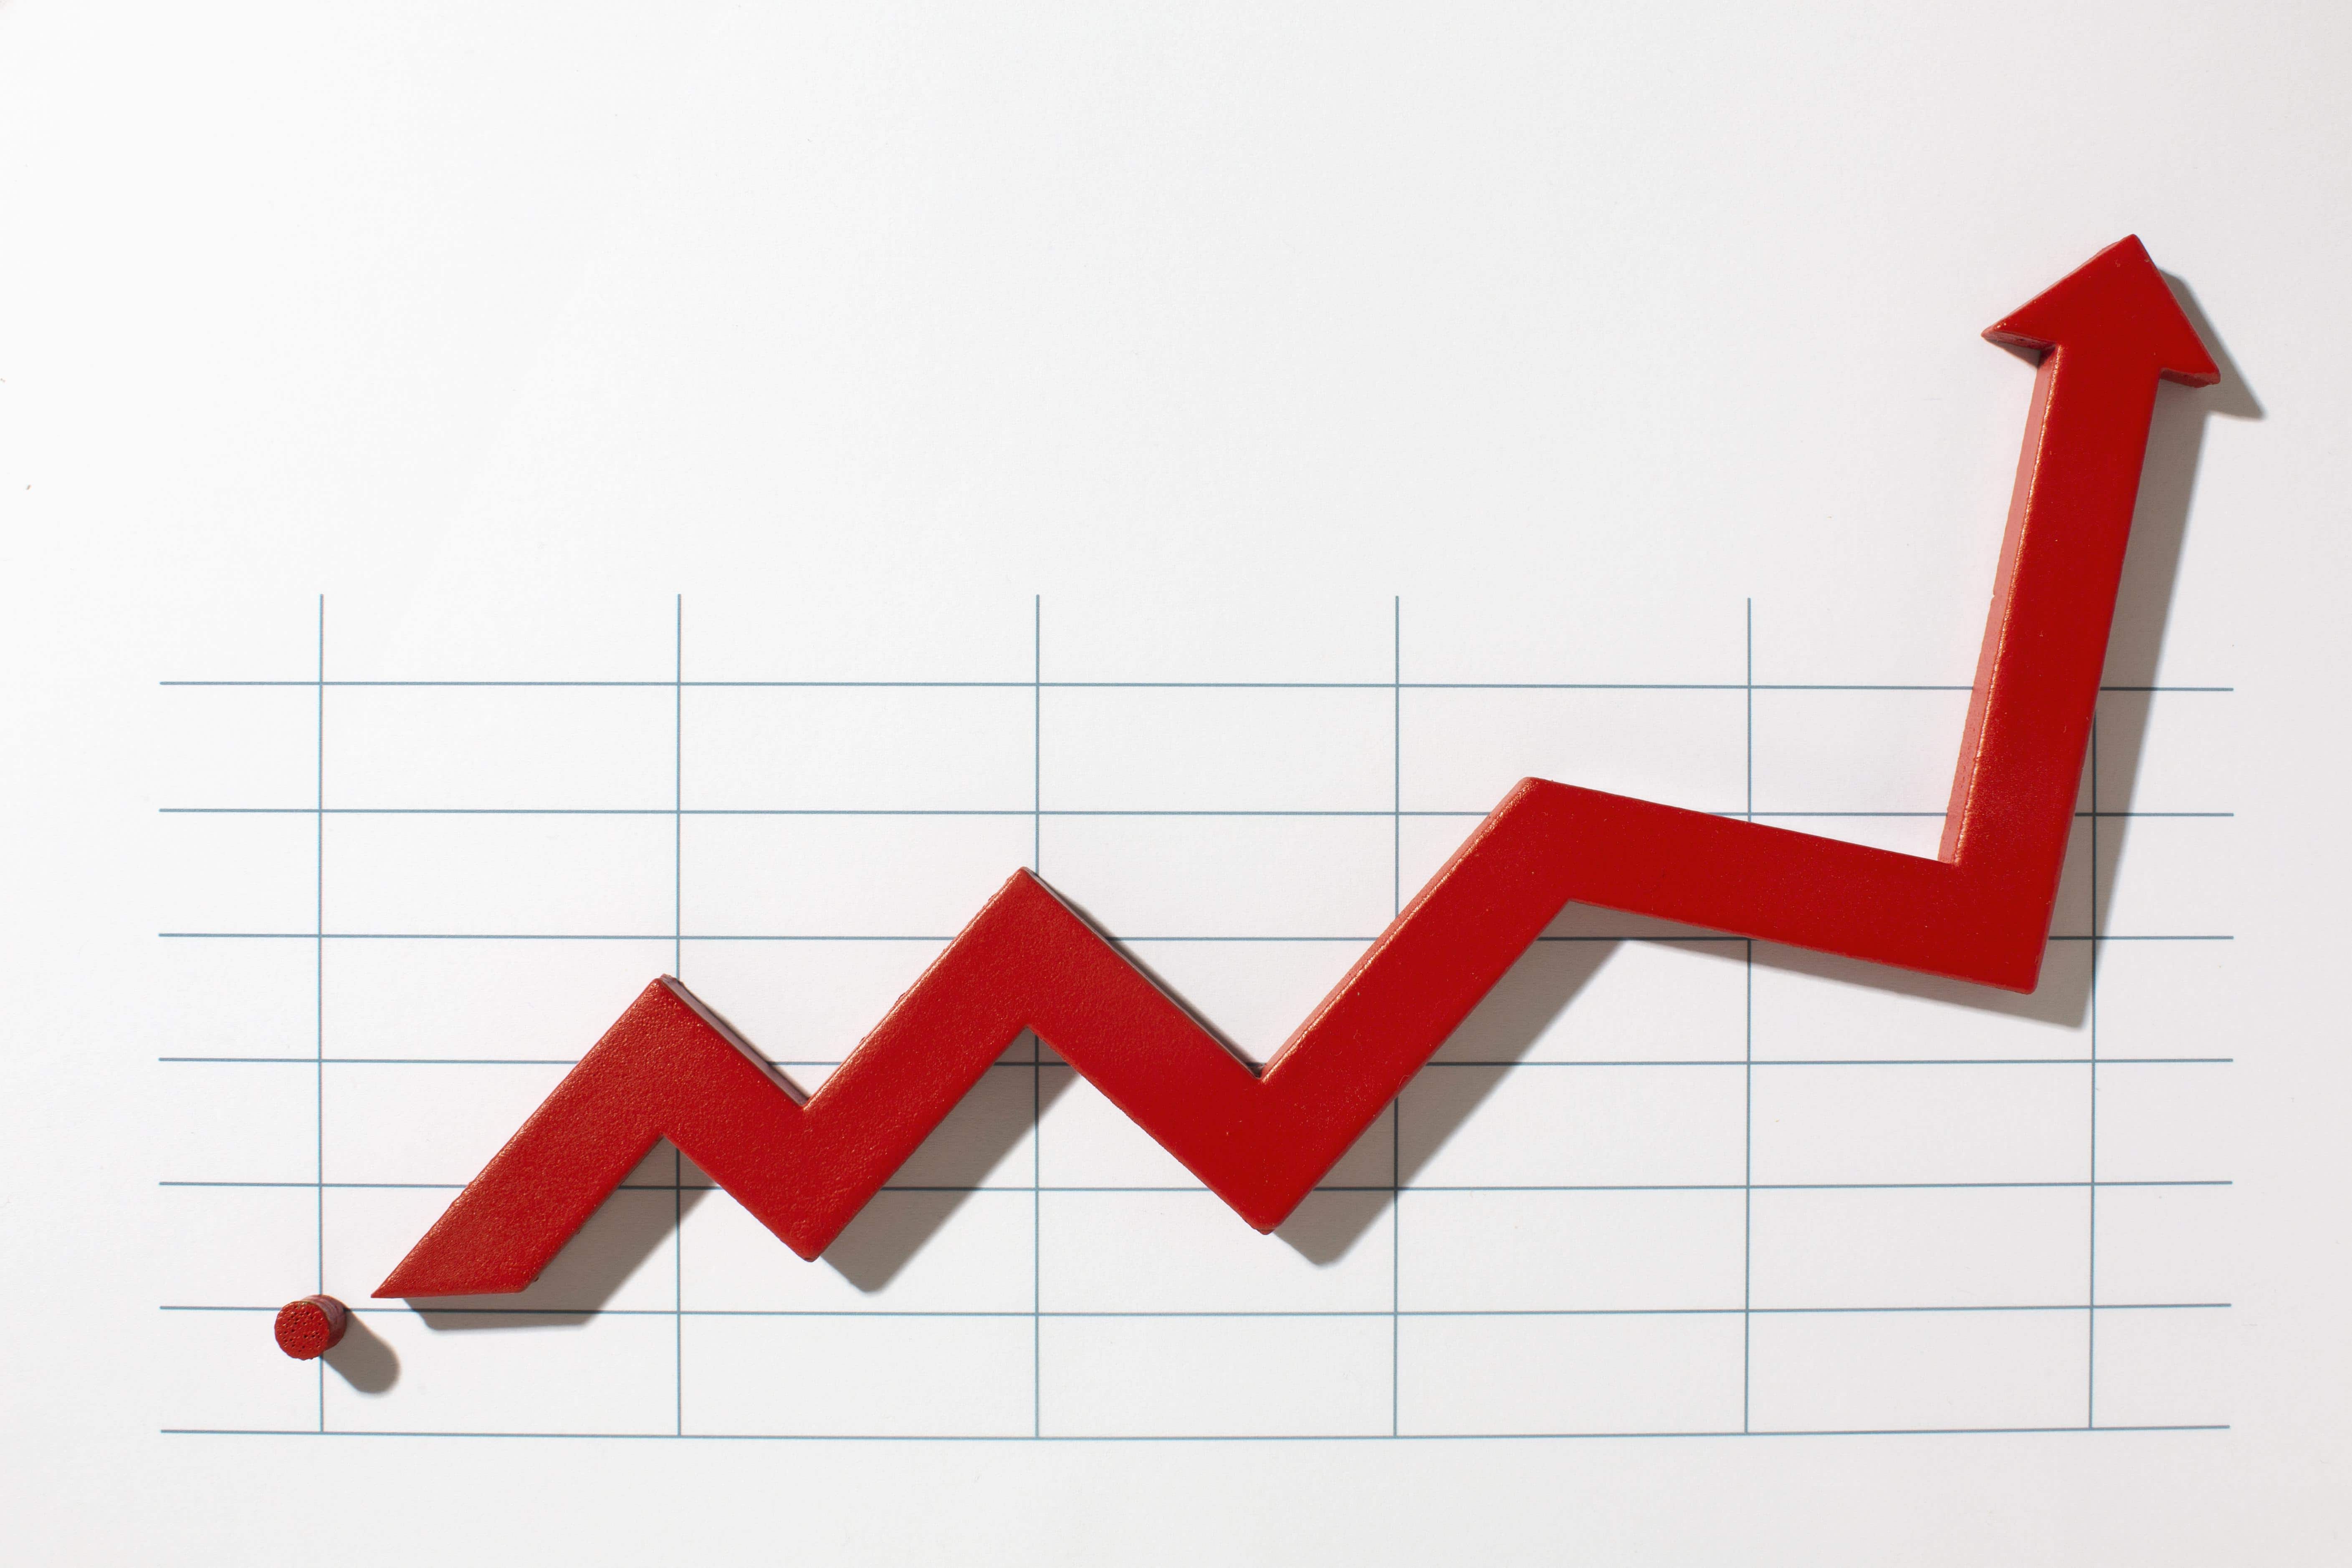 Sonata Software Q4 Update Profits Slide 3% YOY Despite Revenue Surge